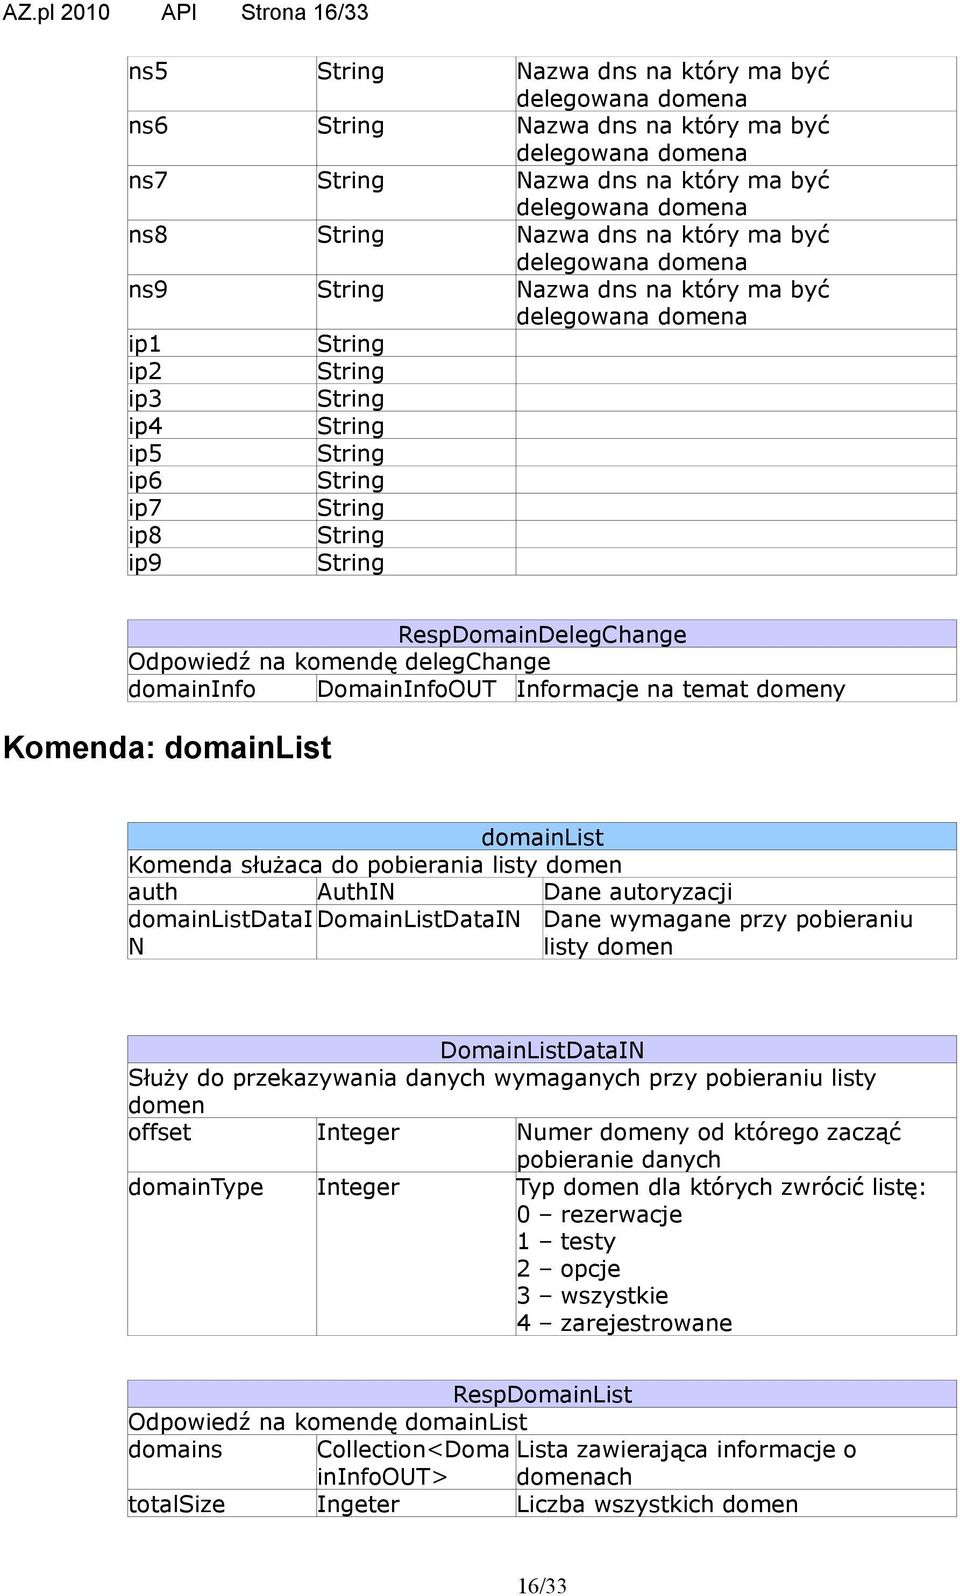 String RespDomainDelegChange Odpowiedź na komendę delegchange domaininfo DomainInfoOUT Informacje na temat domeny Komenda: domainlist domainlist Komenda służaca do pobierania listy domen